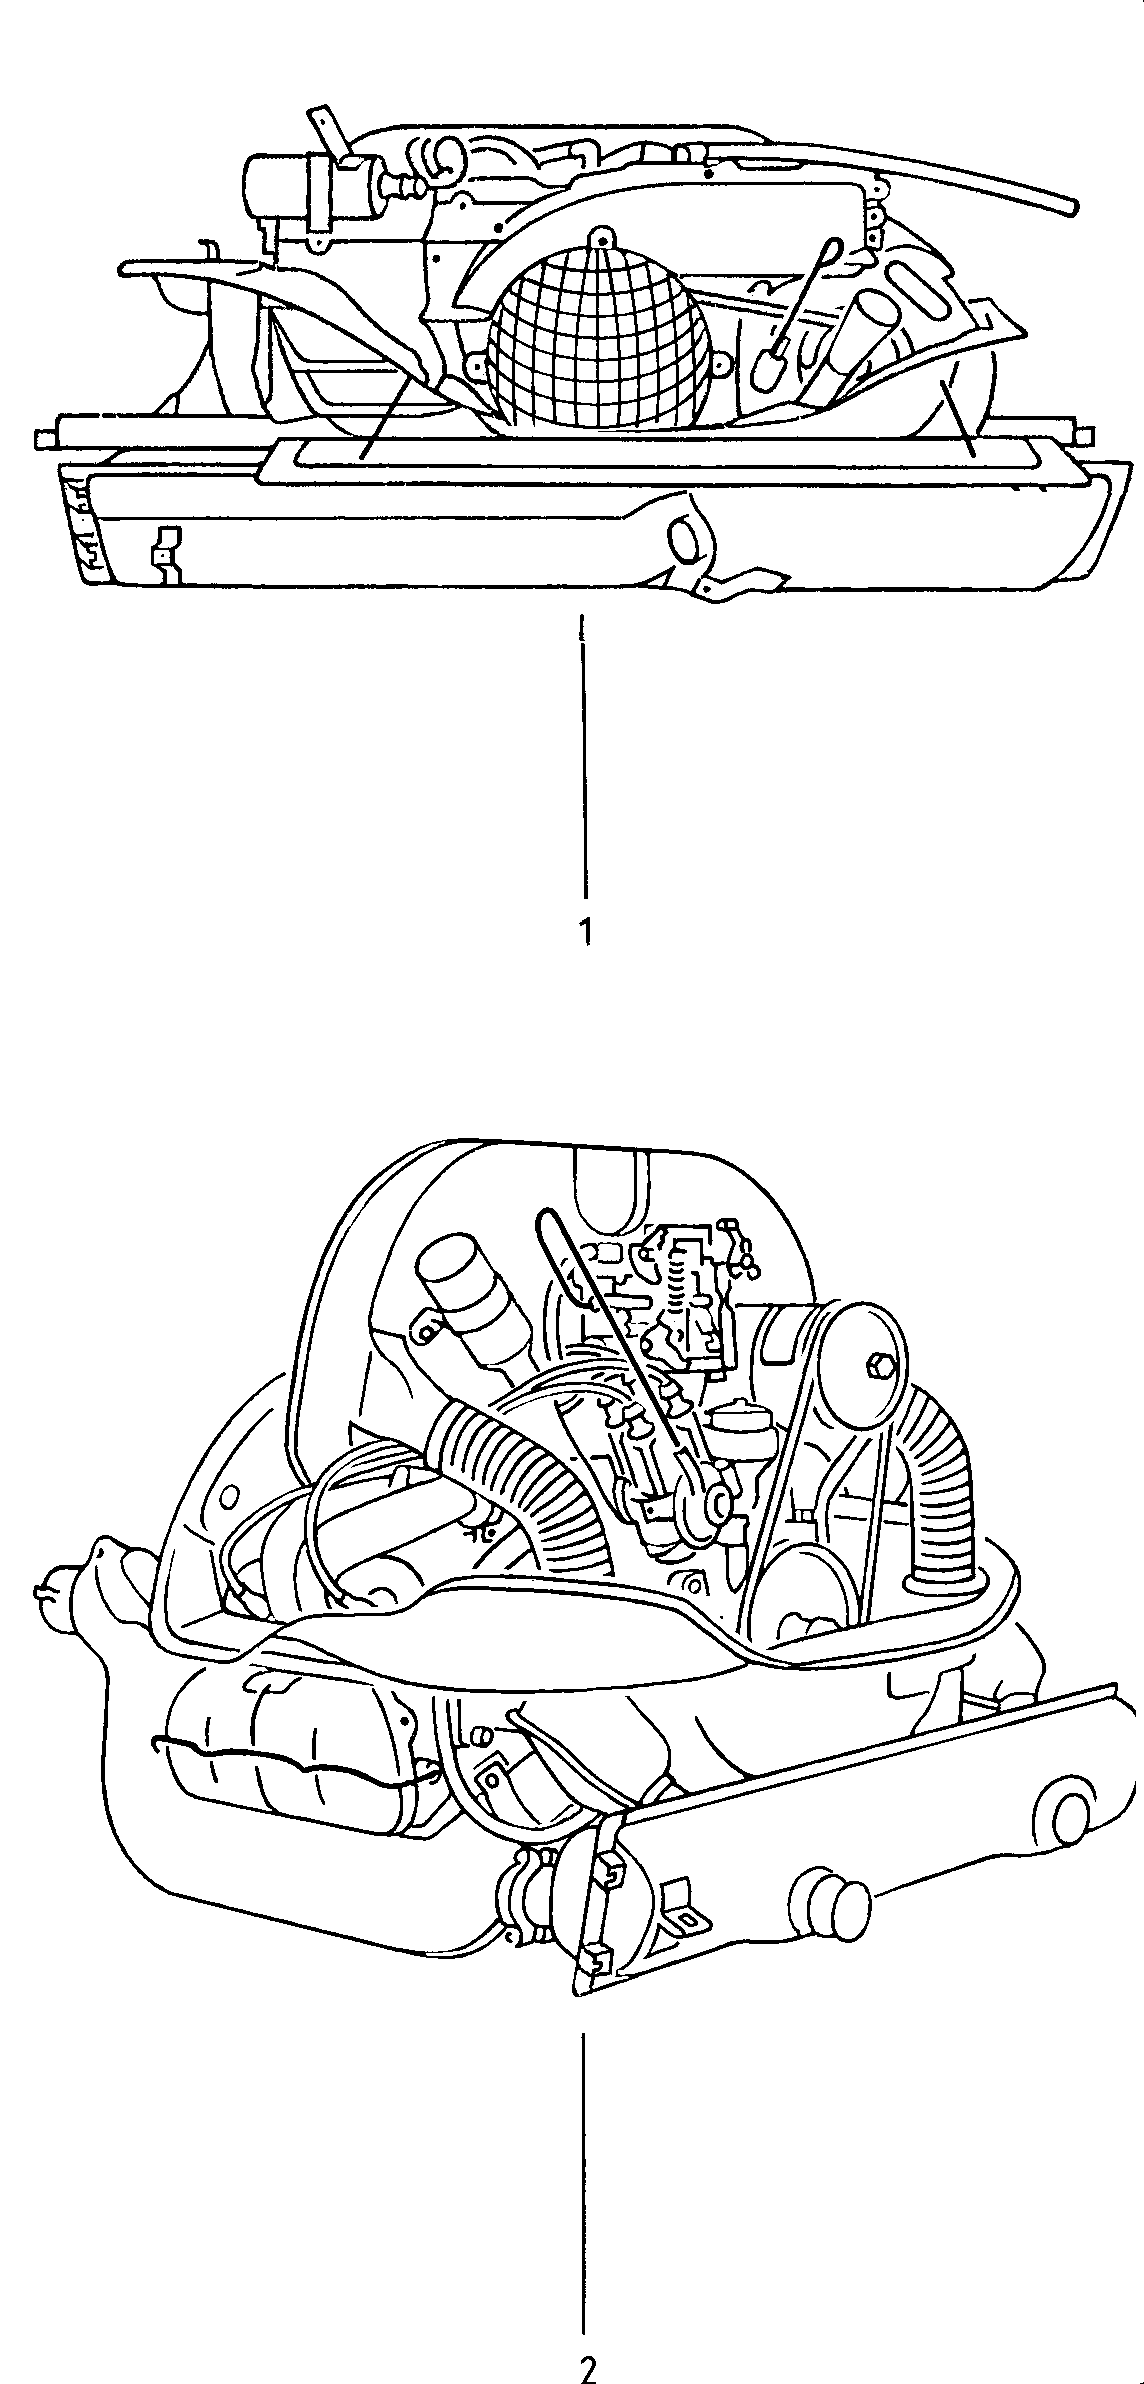 Rumpfmotor mit Kurbelwelle,
Kolben, Zylinderkopf ... - Type 2(T2)  